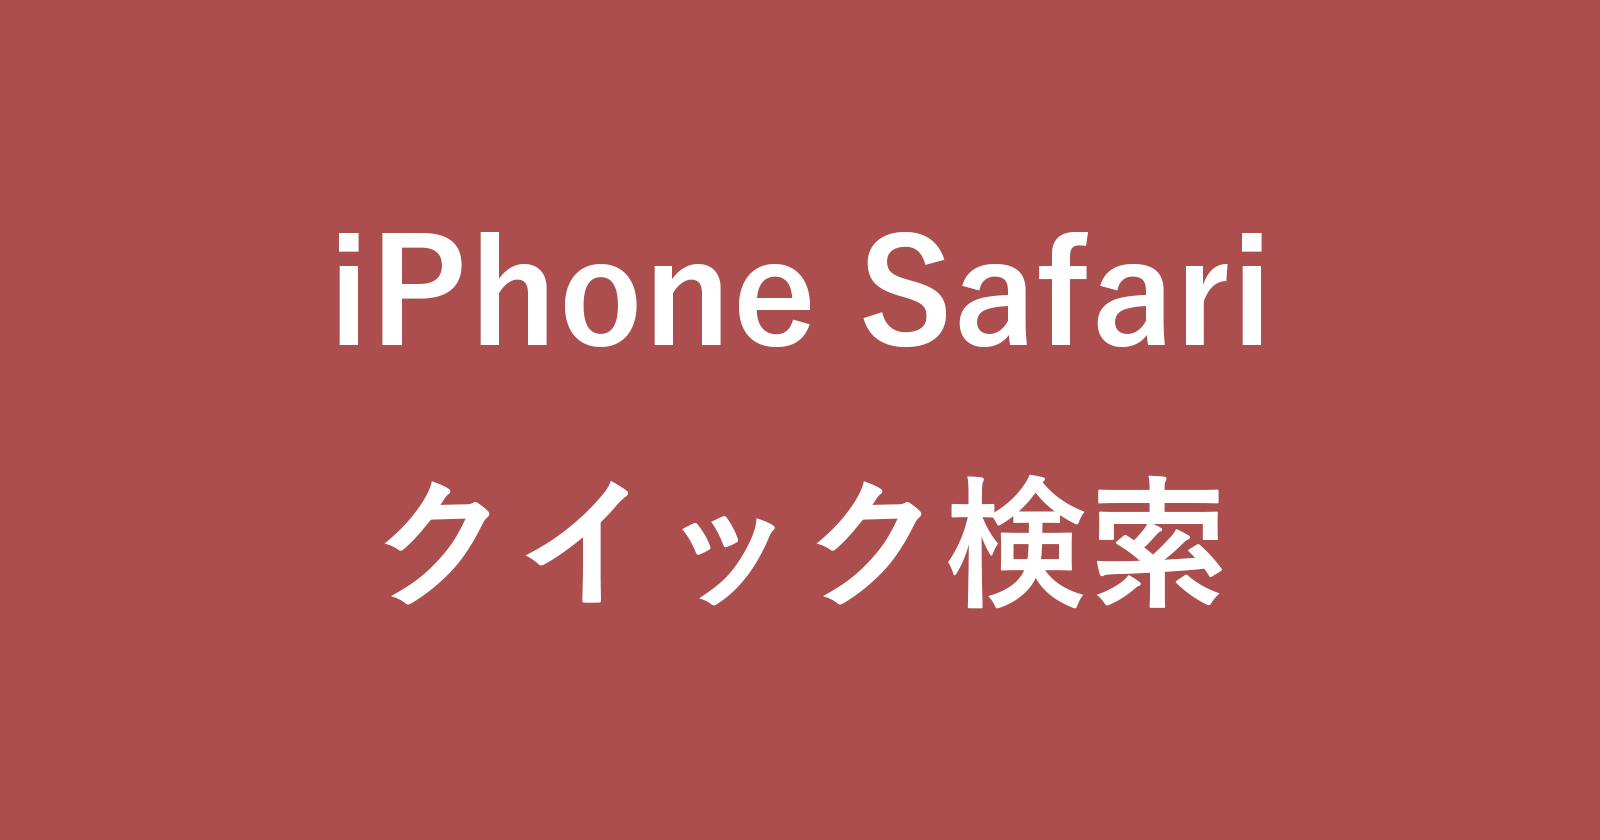 iphone safari quick search